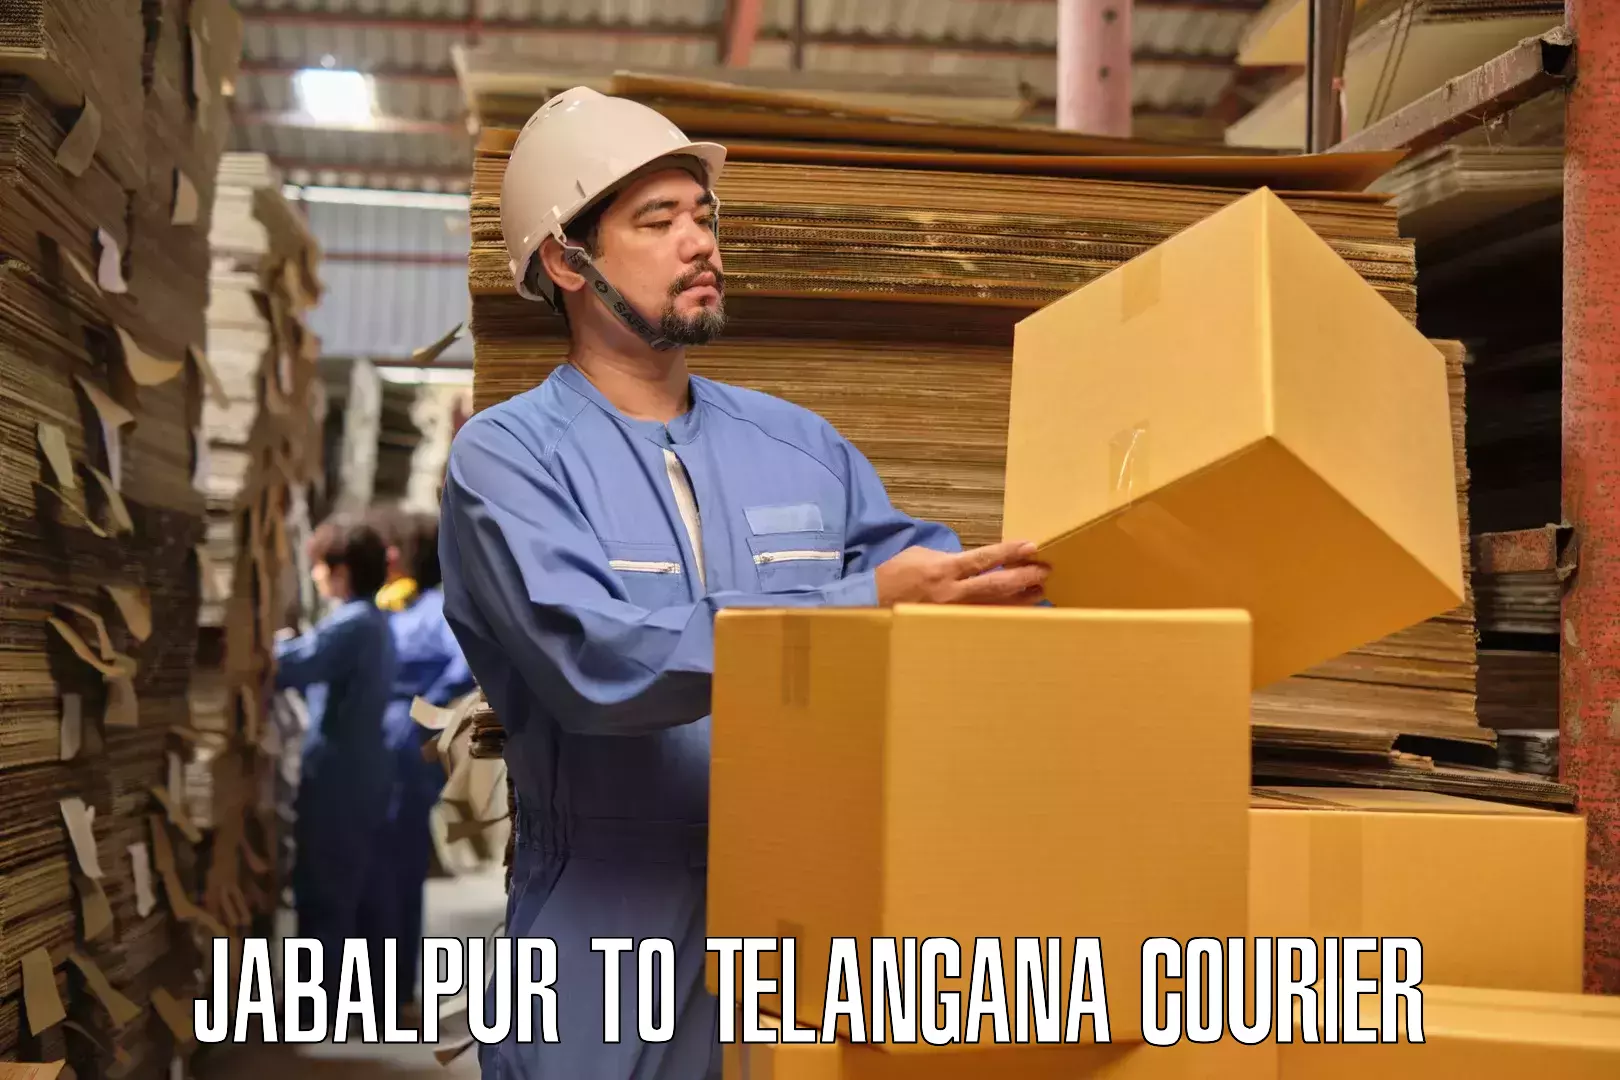 Professional moving company Jabalpur to Amangal